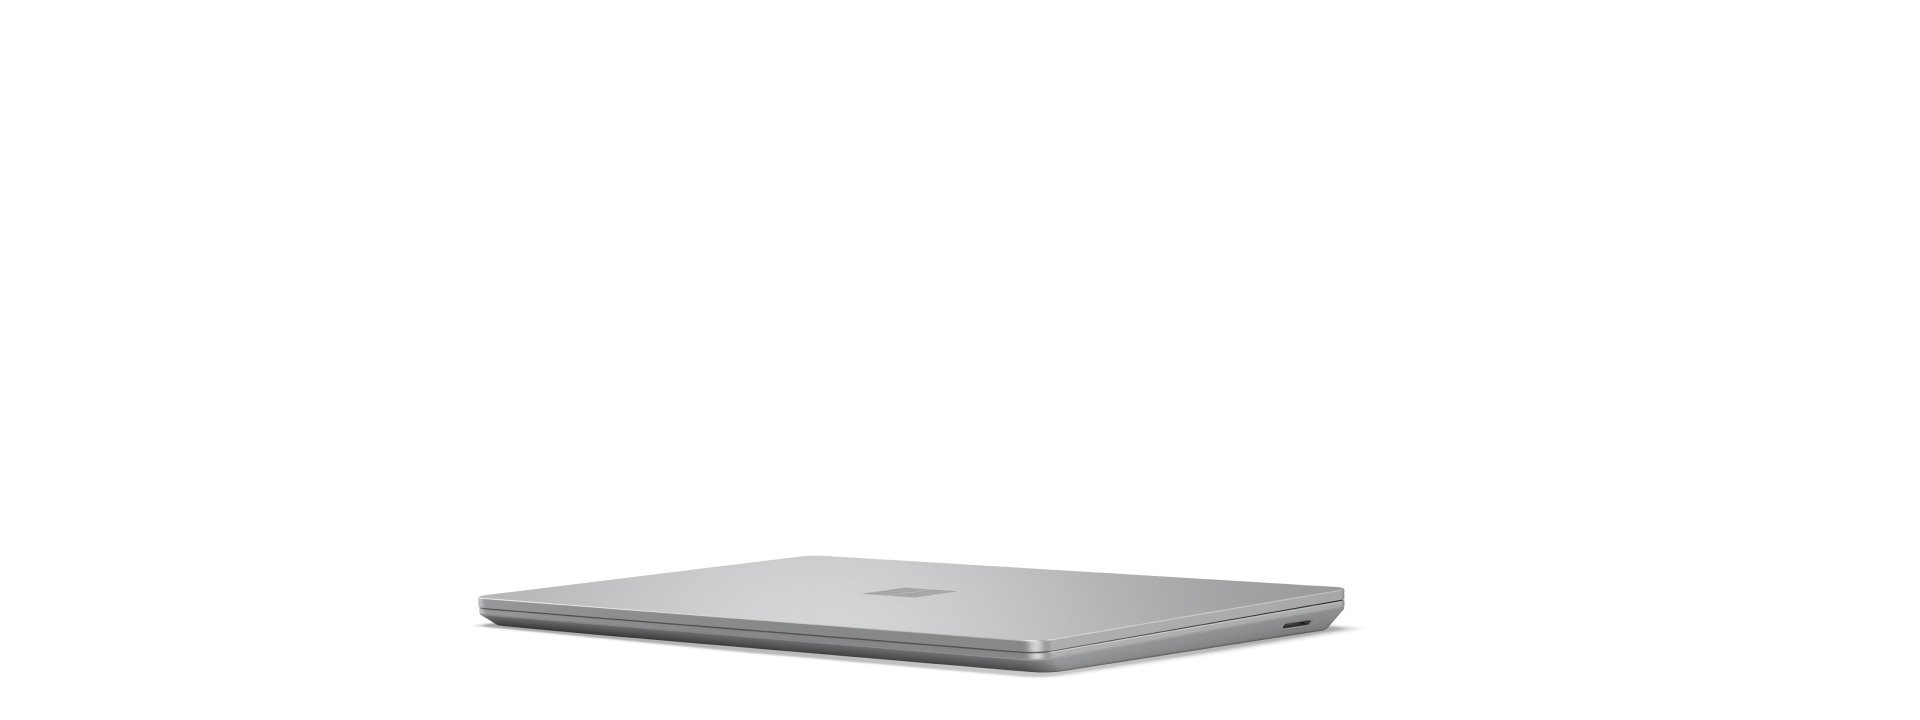 Startbillede for roterende Surface Laptop Go 3, der åbnes og lukkes, mens enheden vises fra alle vinkler.